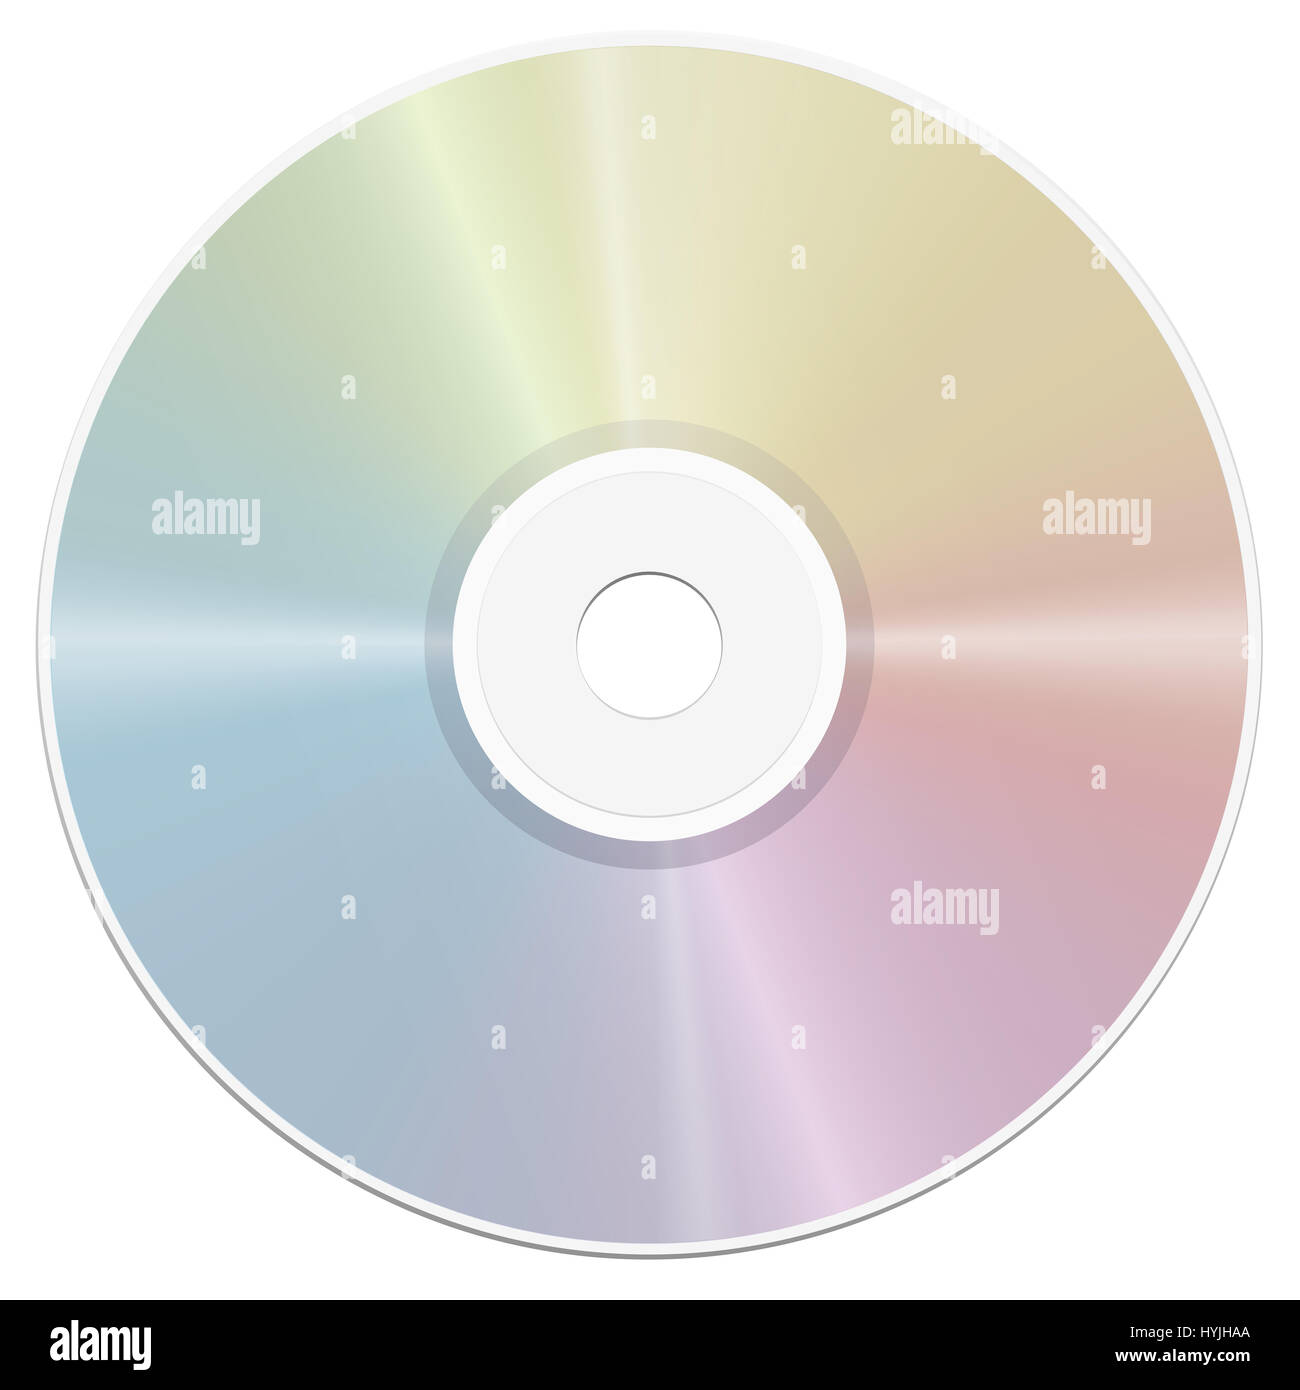 Compact Disc - gradiente rainbow reflejo de la superficie- realista ilustración aislada sobre fondo blanco. Foto de stock